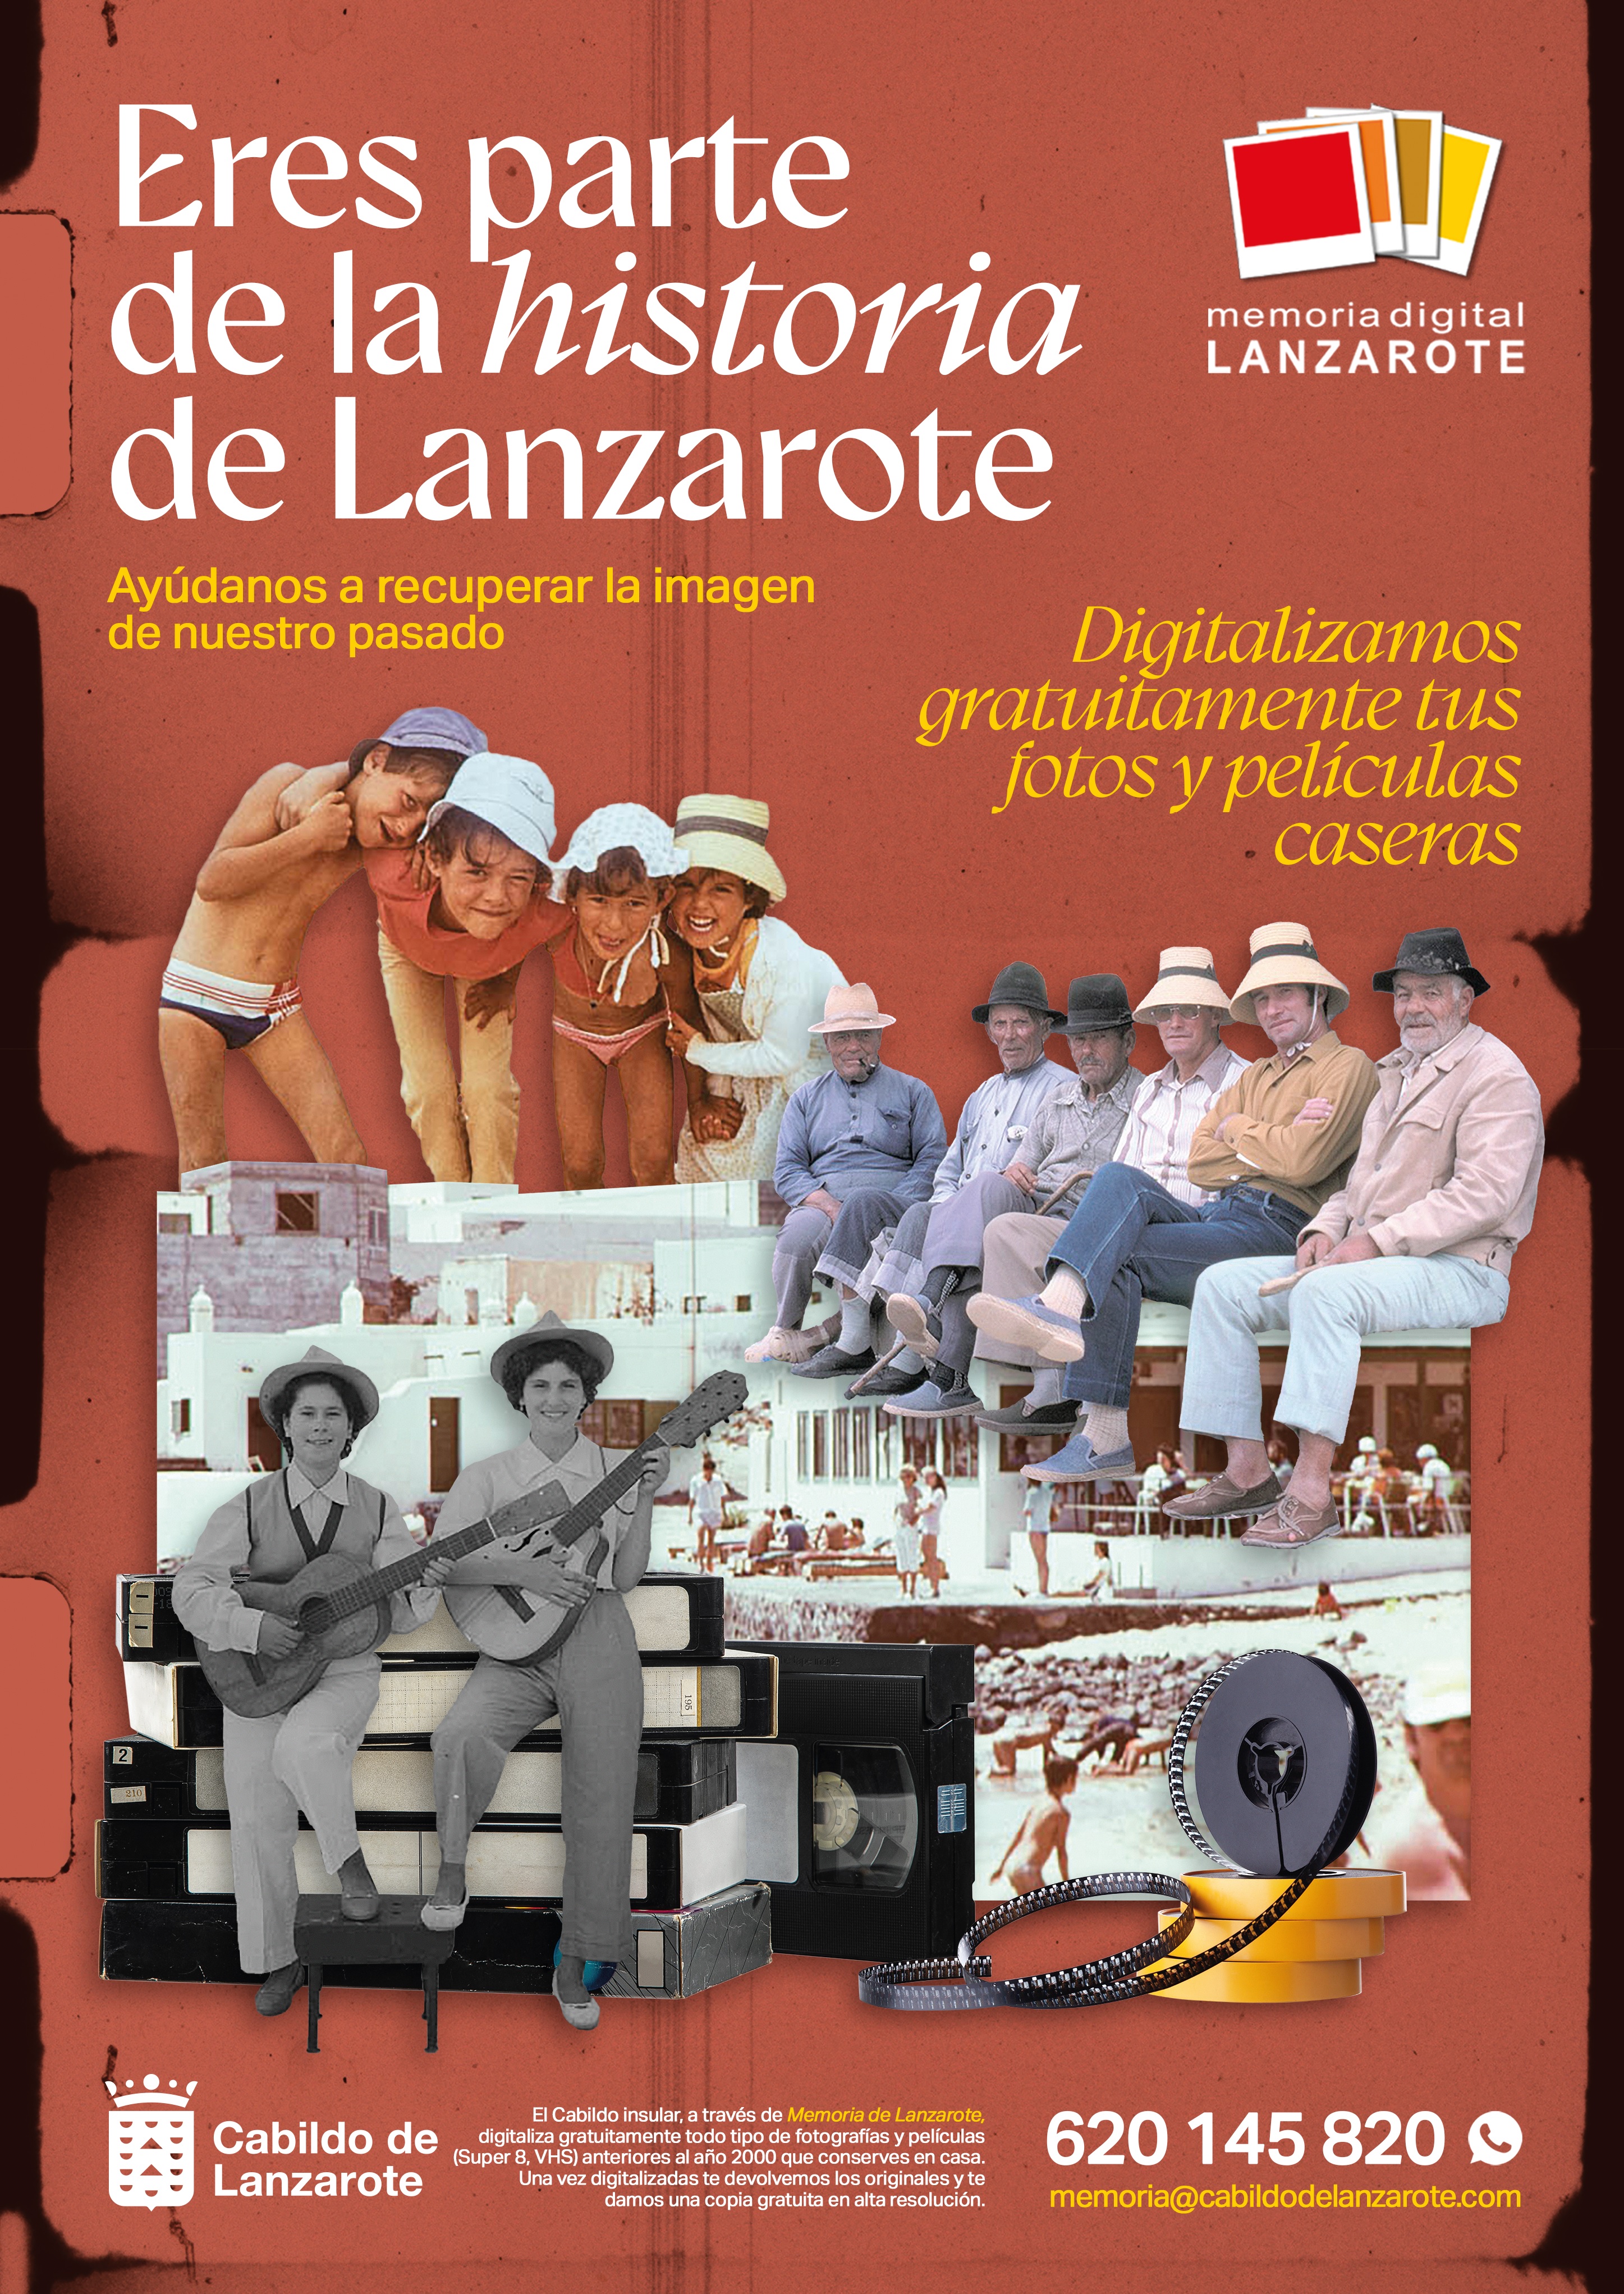 El Cabildo anima a la población de la isla a digitalizar sus fotografías antiguas para preservar la memoria audiovisual de Lanzarote